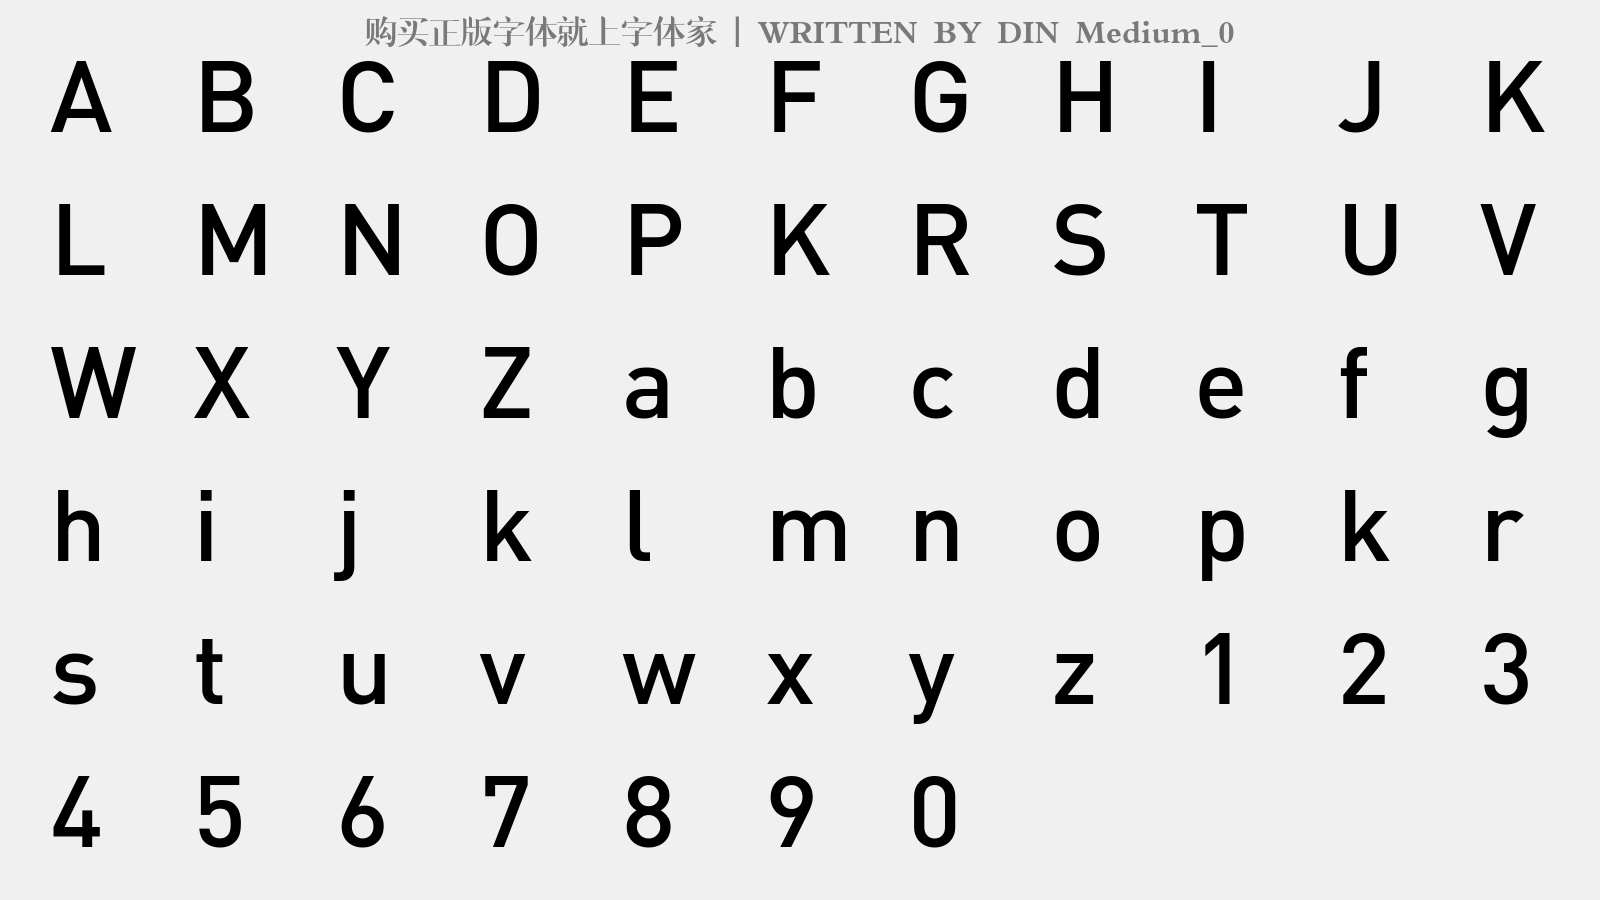 DIN Medium_0 - 大写字母/小写字母/数字